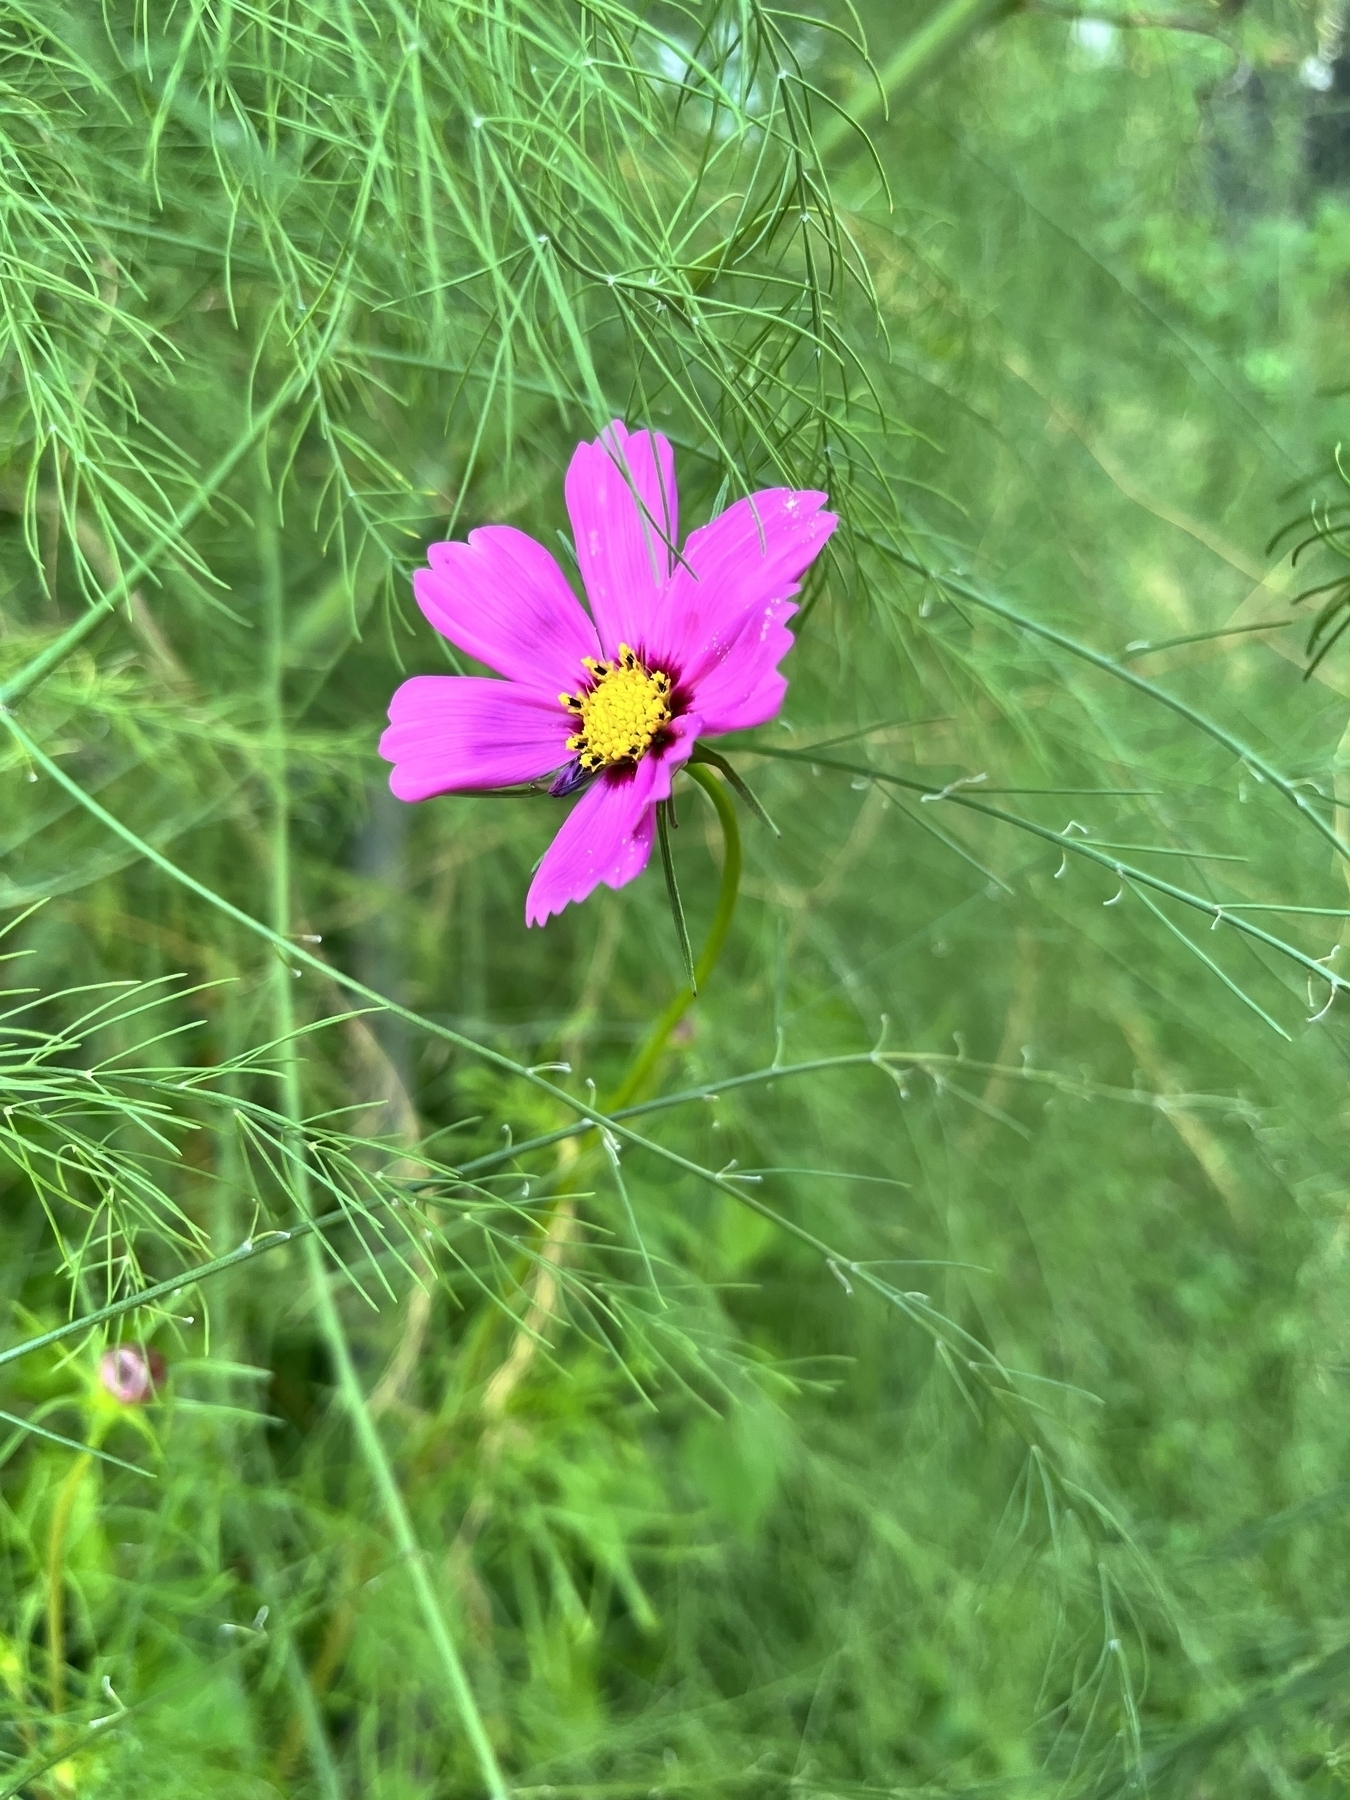 Little pinky purpley flower in tall grasses. 